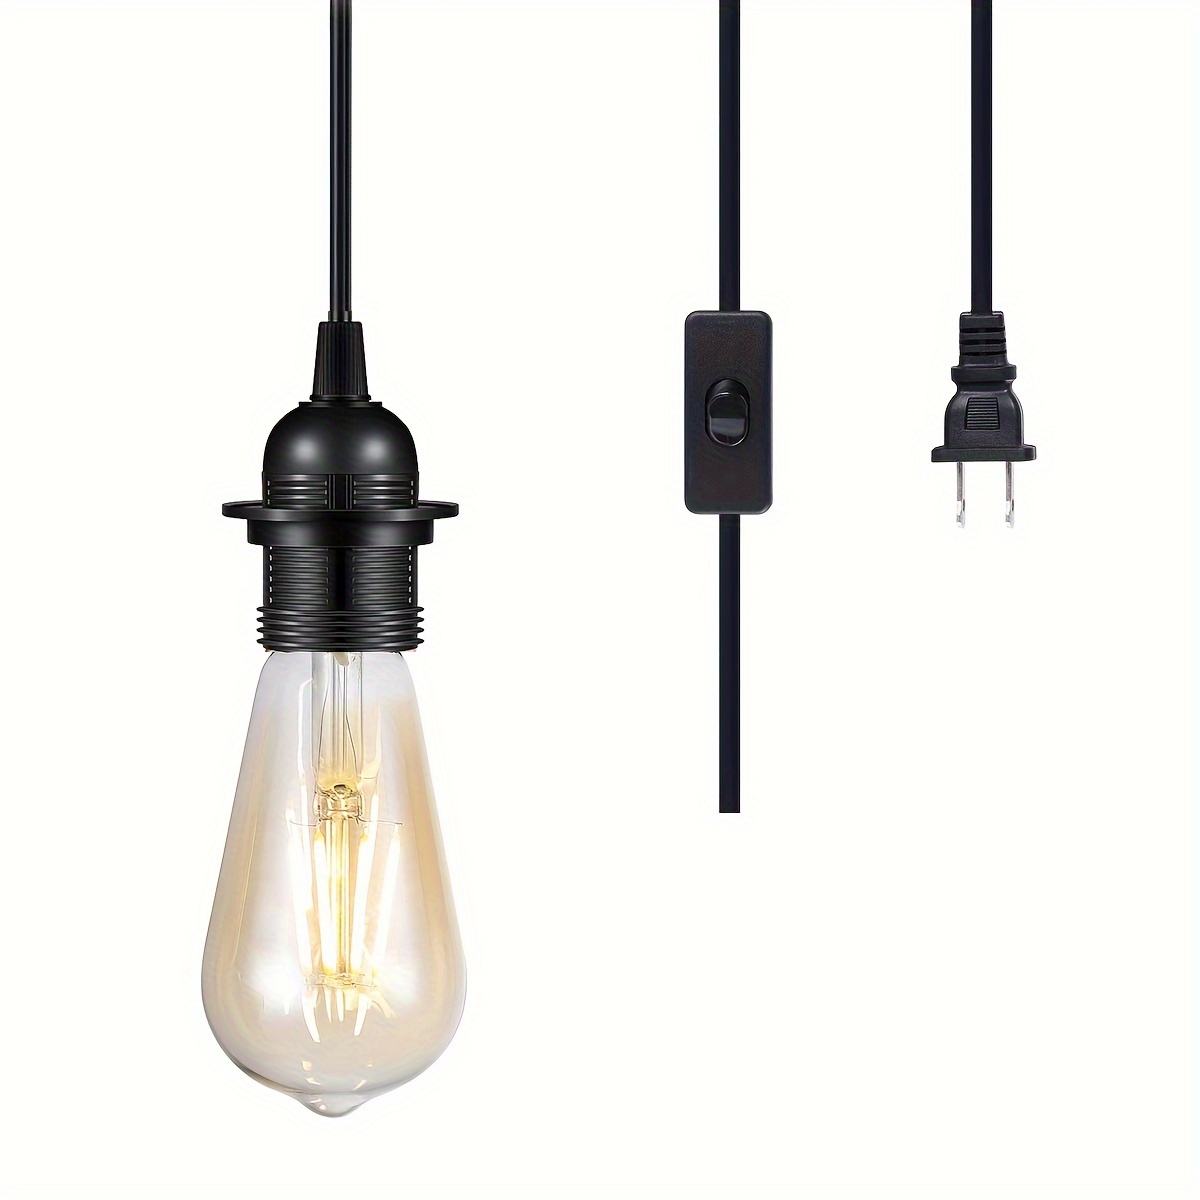  xcbdf Base de lámpara vintage tipo hogar, casquillo E27,  soporte de lámpara LED, accesorios de iluminación para candelabros,  casquillo de bombilla duradero (tipo de base: 20 piezas, color: bronce  rojo) 